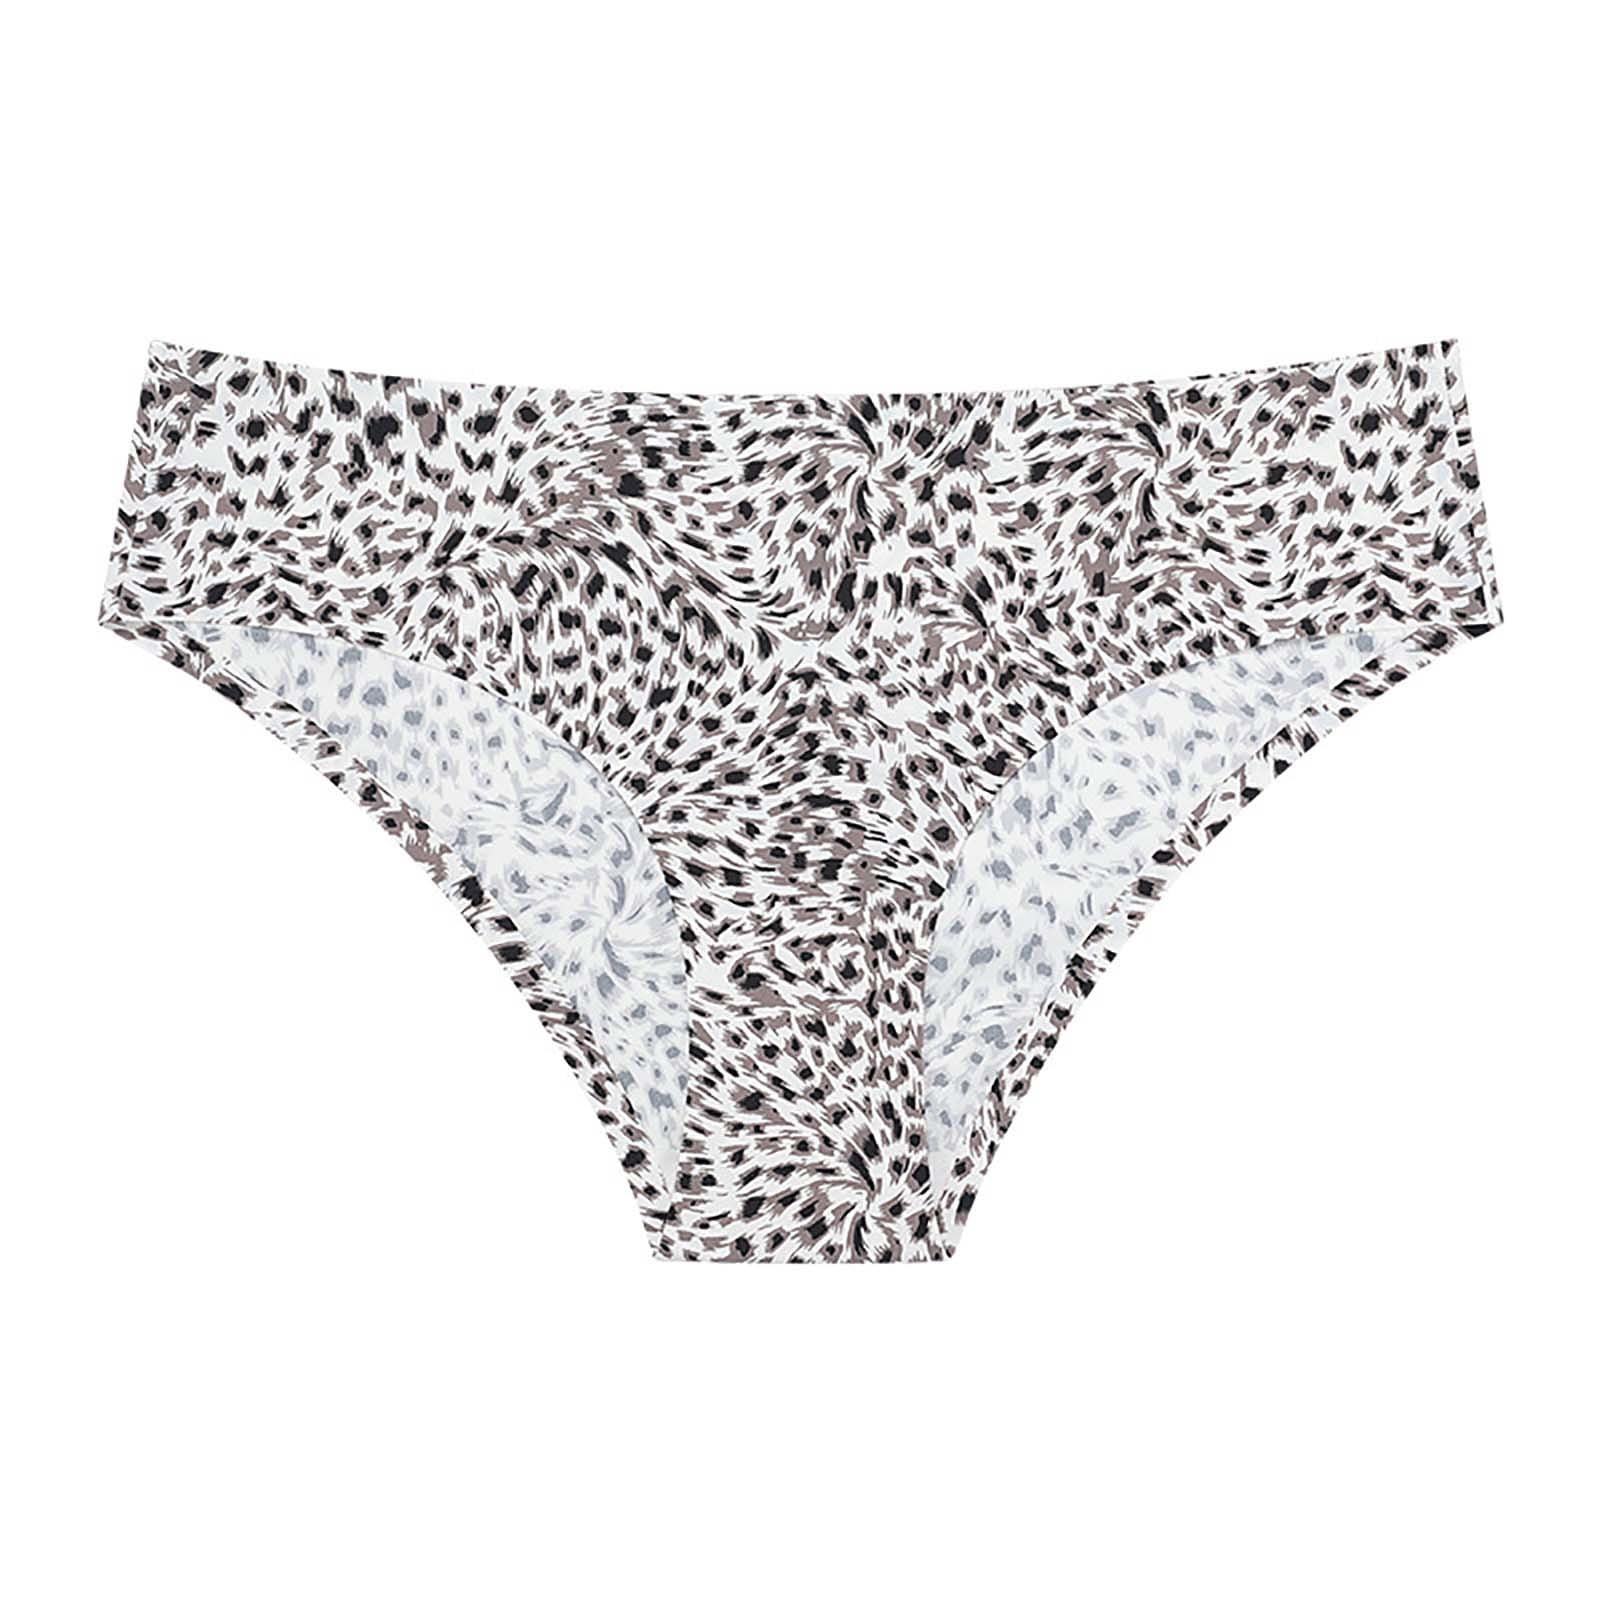 IROINNID Hipster Underwear For Women High-Cut Seamless Sexy Leopard Low ...